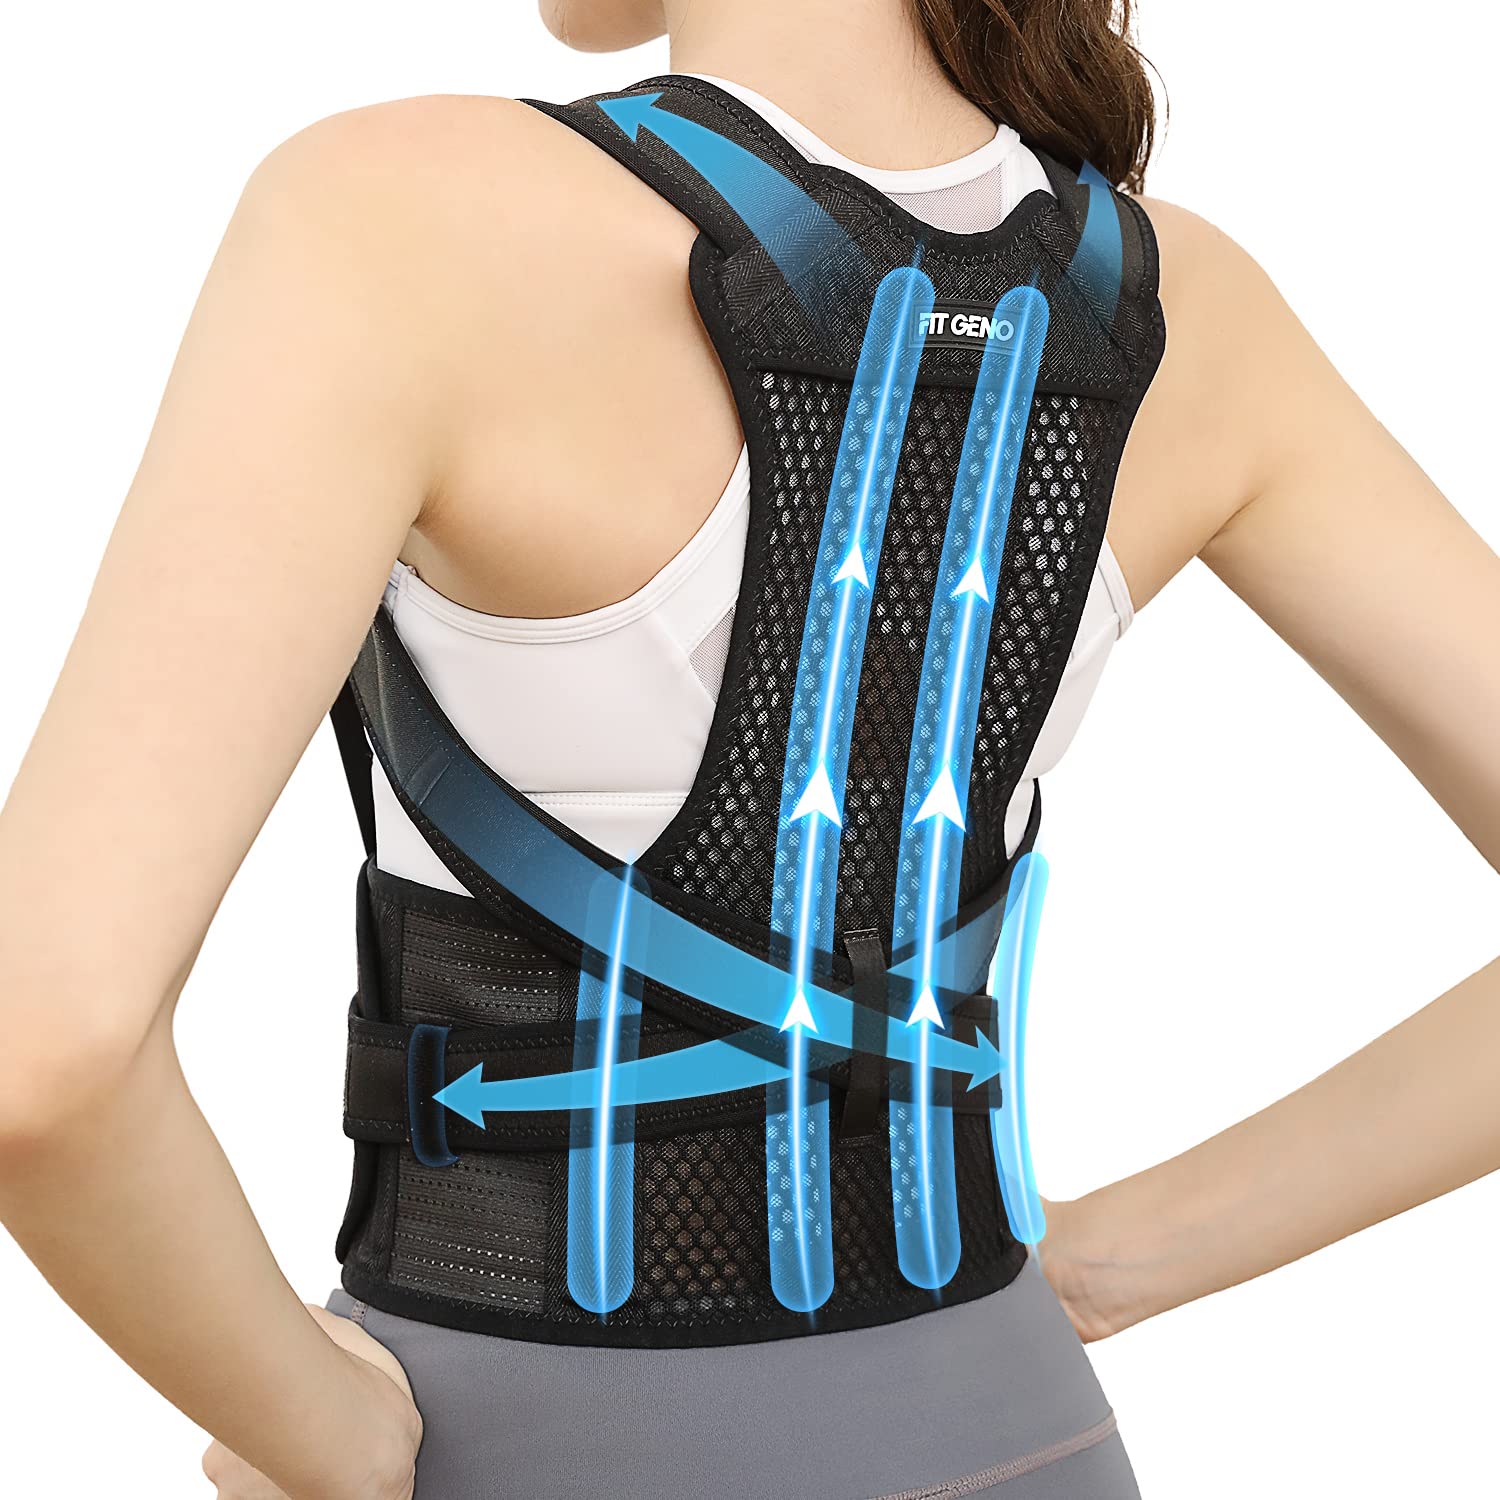 Posture Corrector - Support Brace for Back & Shoulders - Vive Health